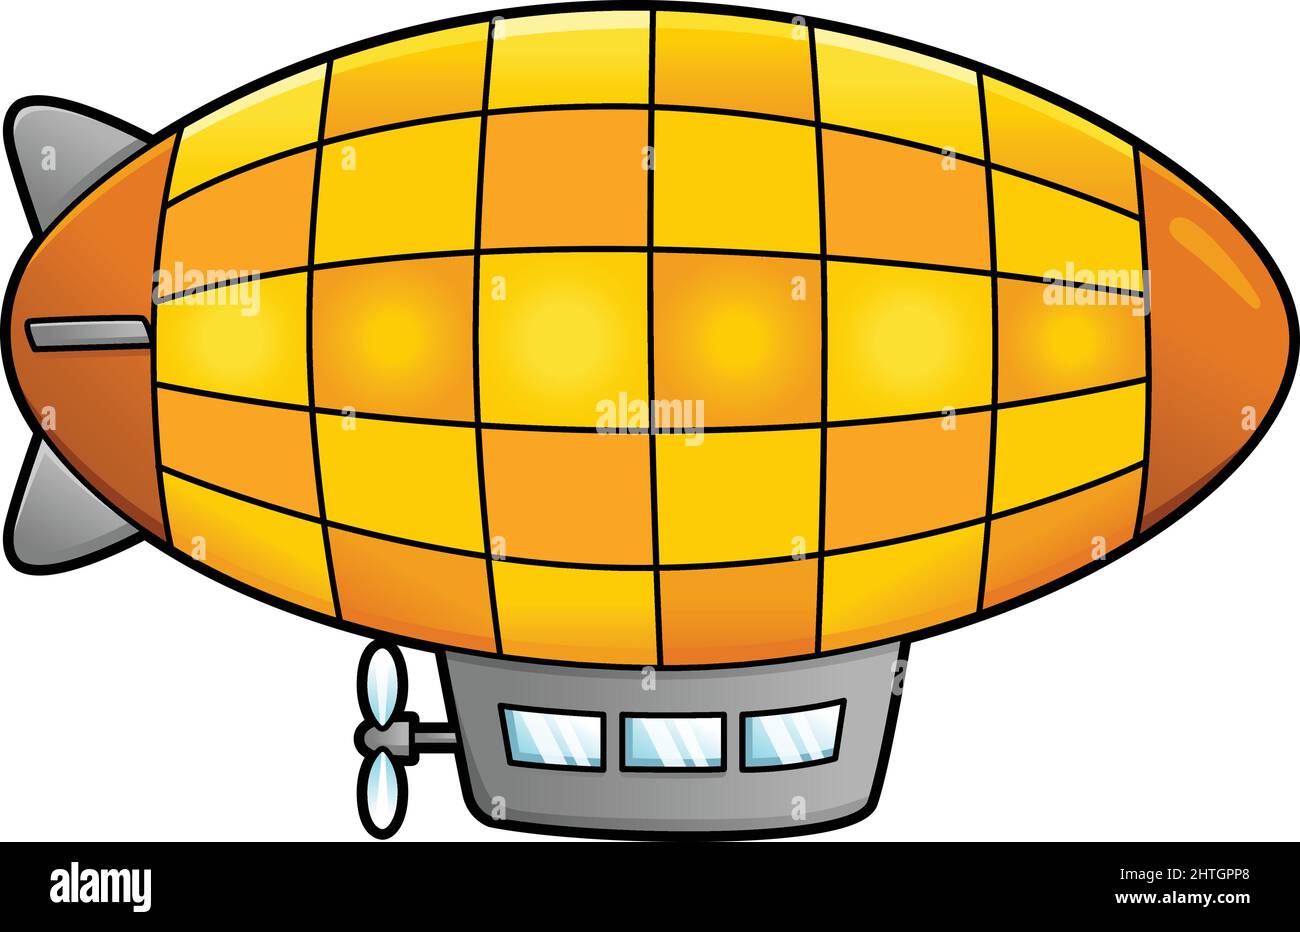 Cartoon zeppelin Banque d'images détourées - Alamy